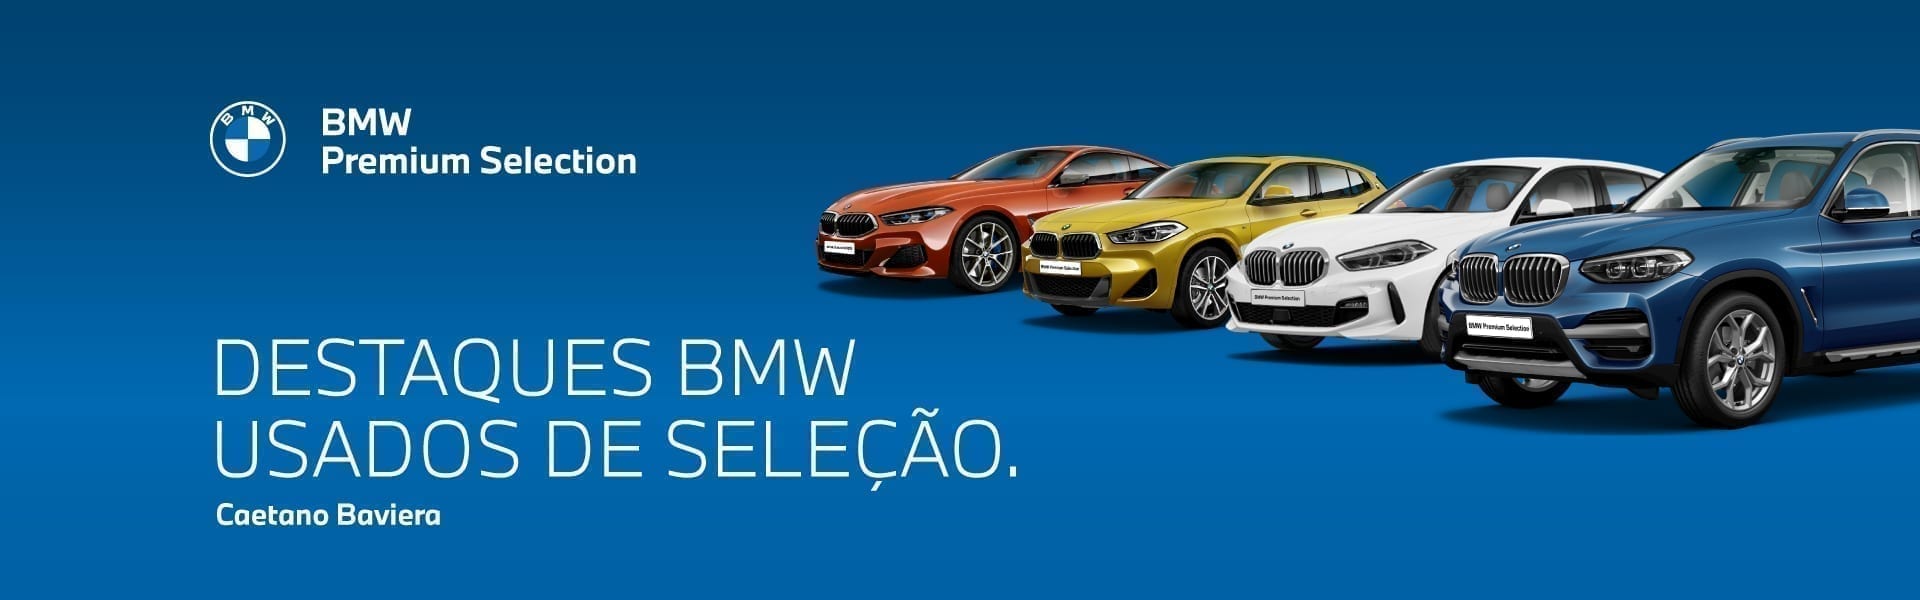 destaques BMW usados